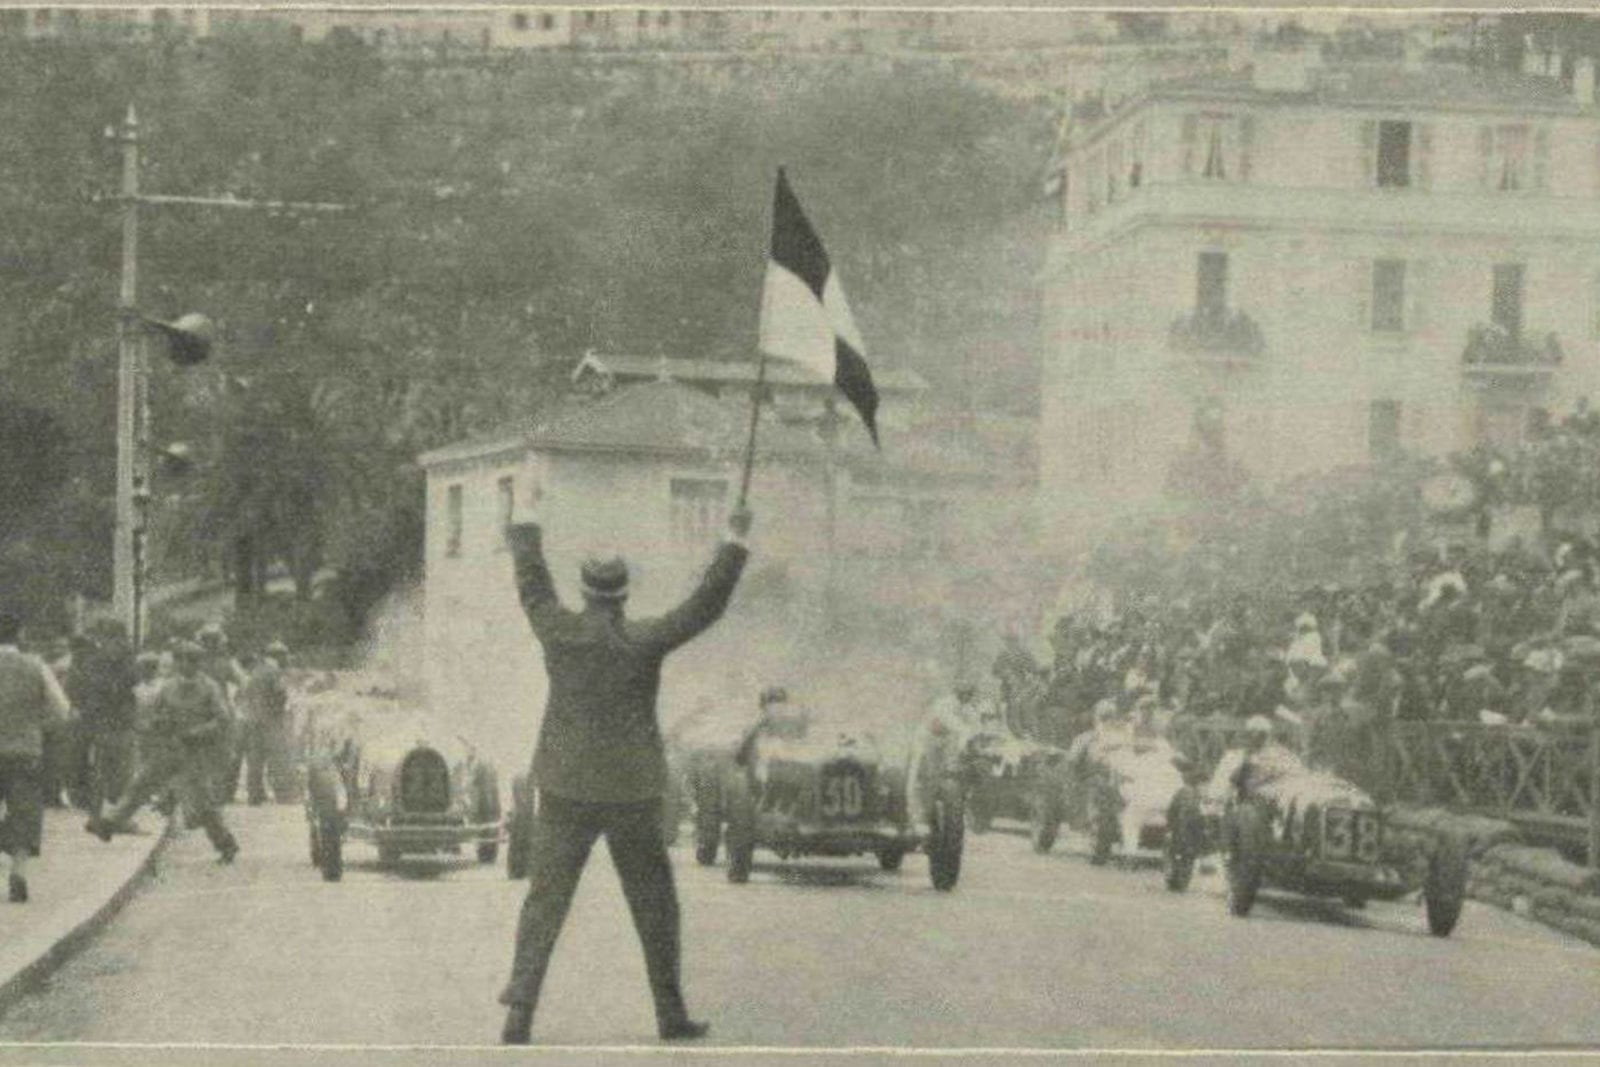 1932 Monaco Grand Prix start